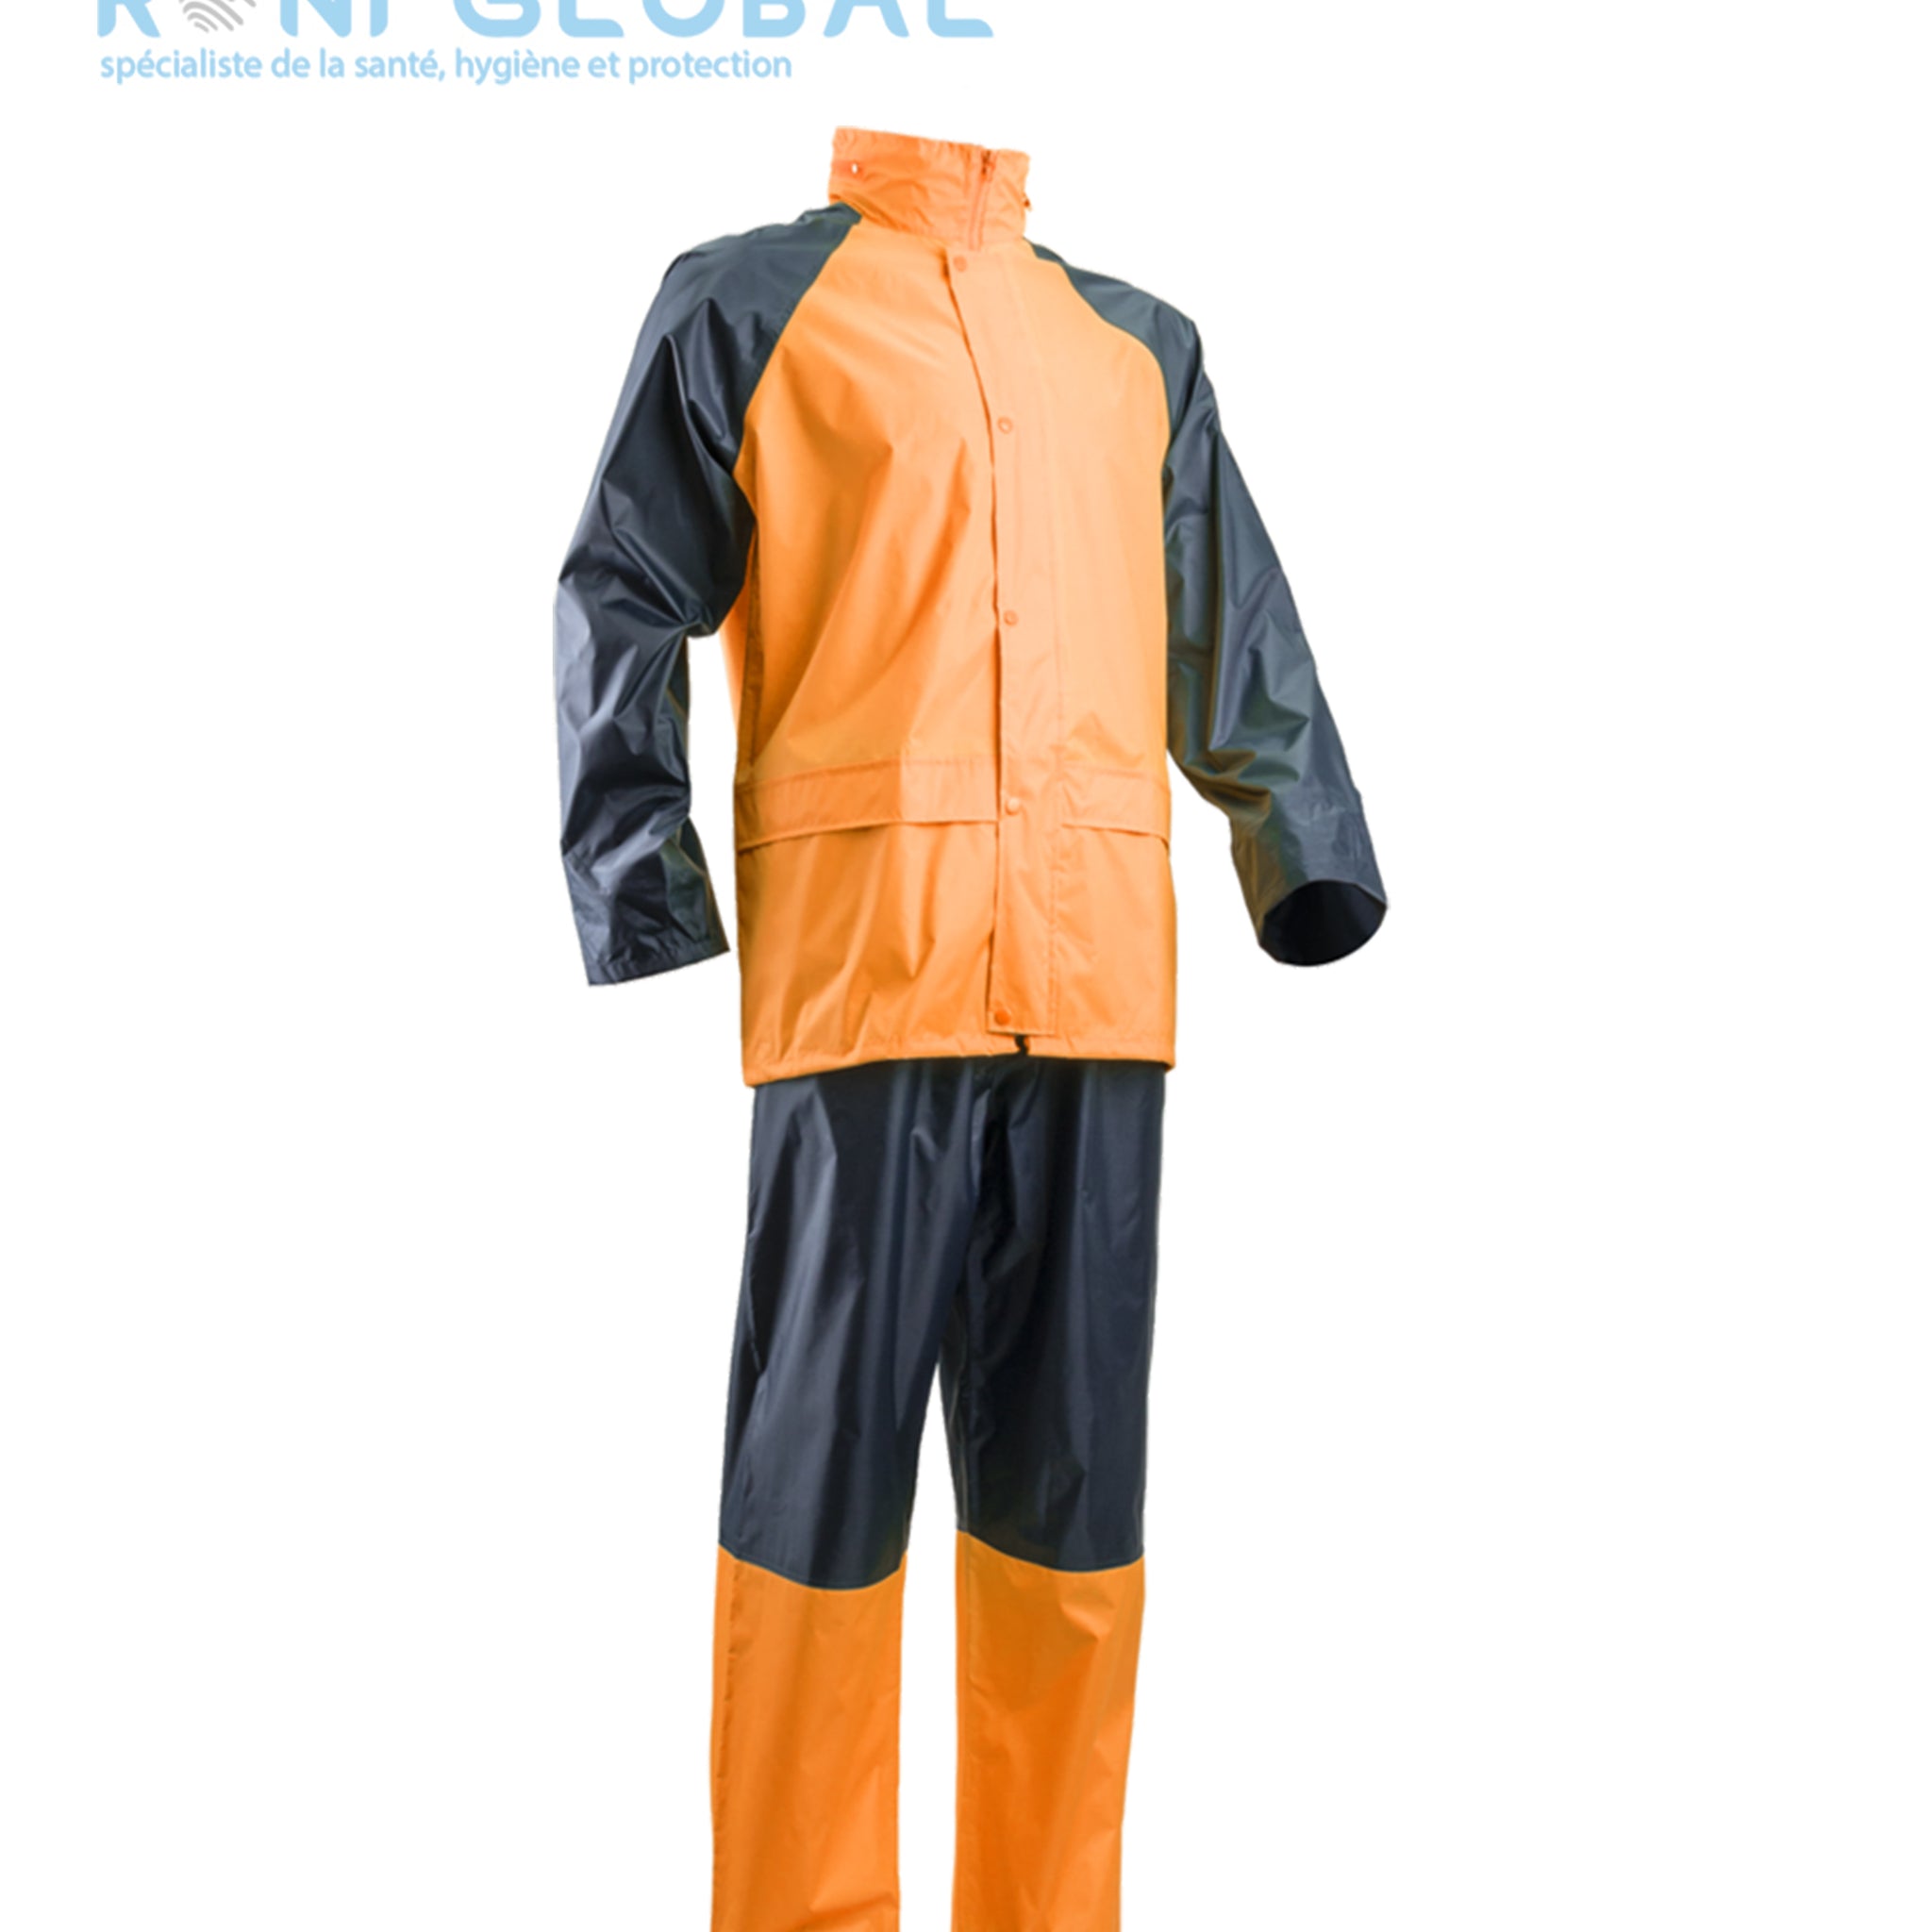 Ensemble de sécurité fluo coupe-vent anti-pluie en polyester enduit PVC souple - PVC SET COVERGUARD